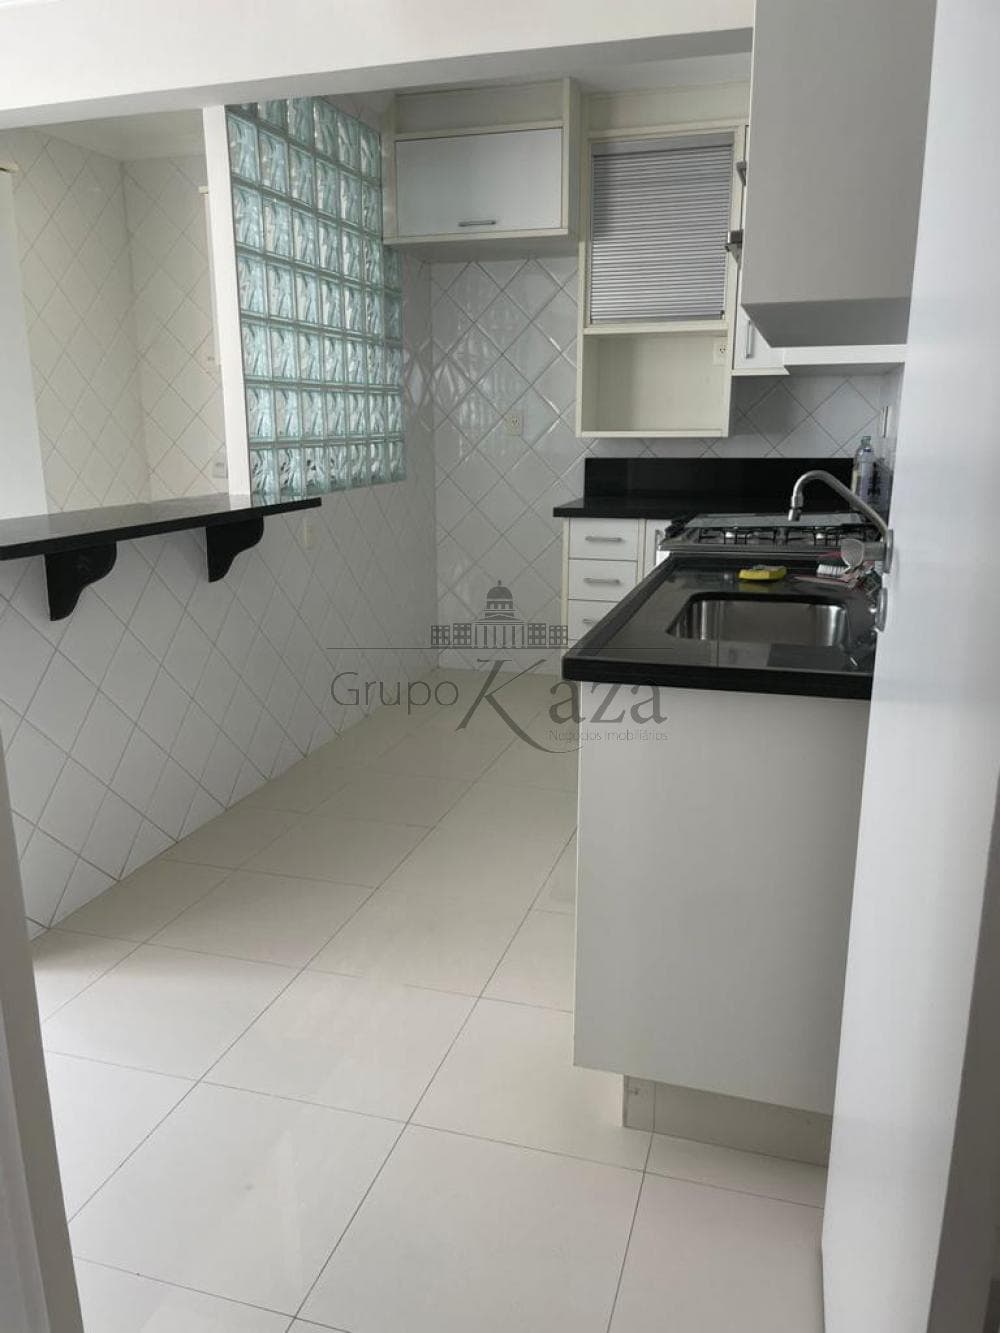 Foto 10 de Apartamento Cobertura Duplex em Parque Residencial Aquarius, São José dos Campos - imagem 10